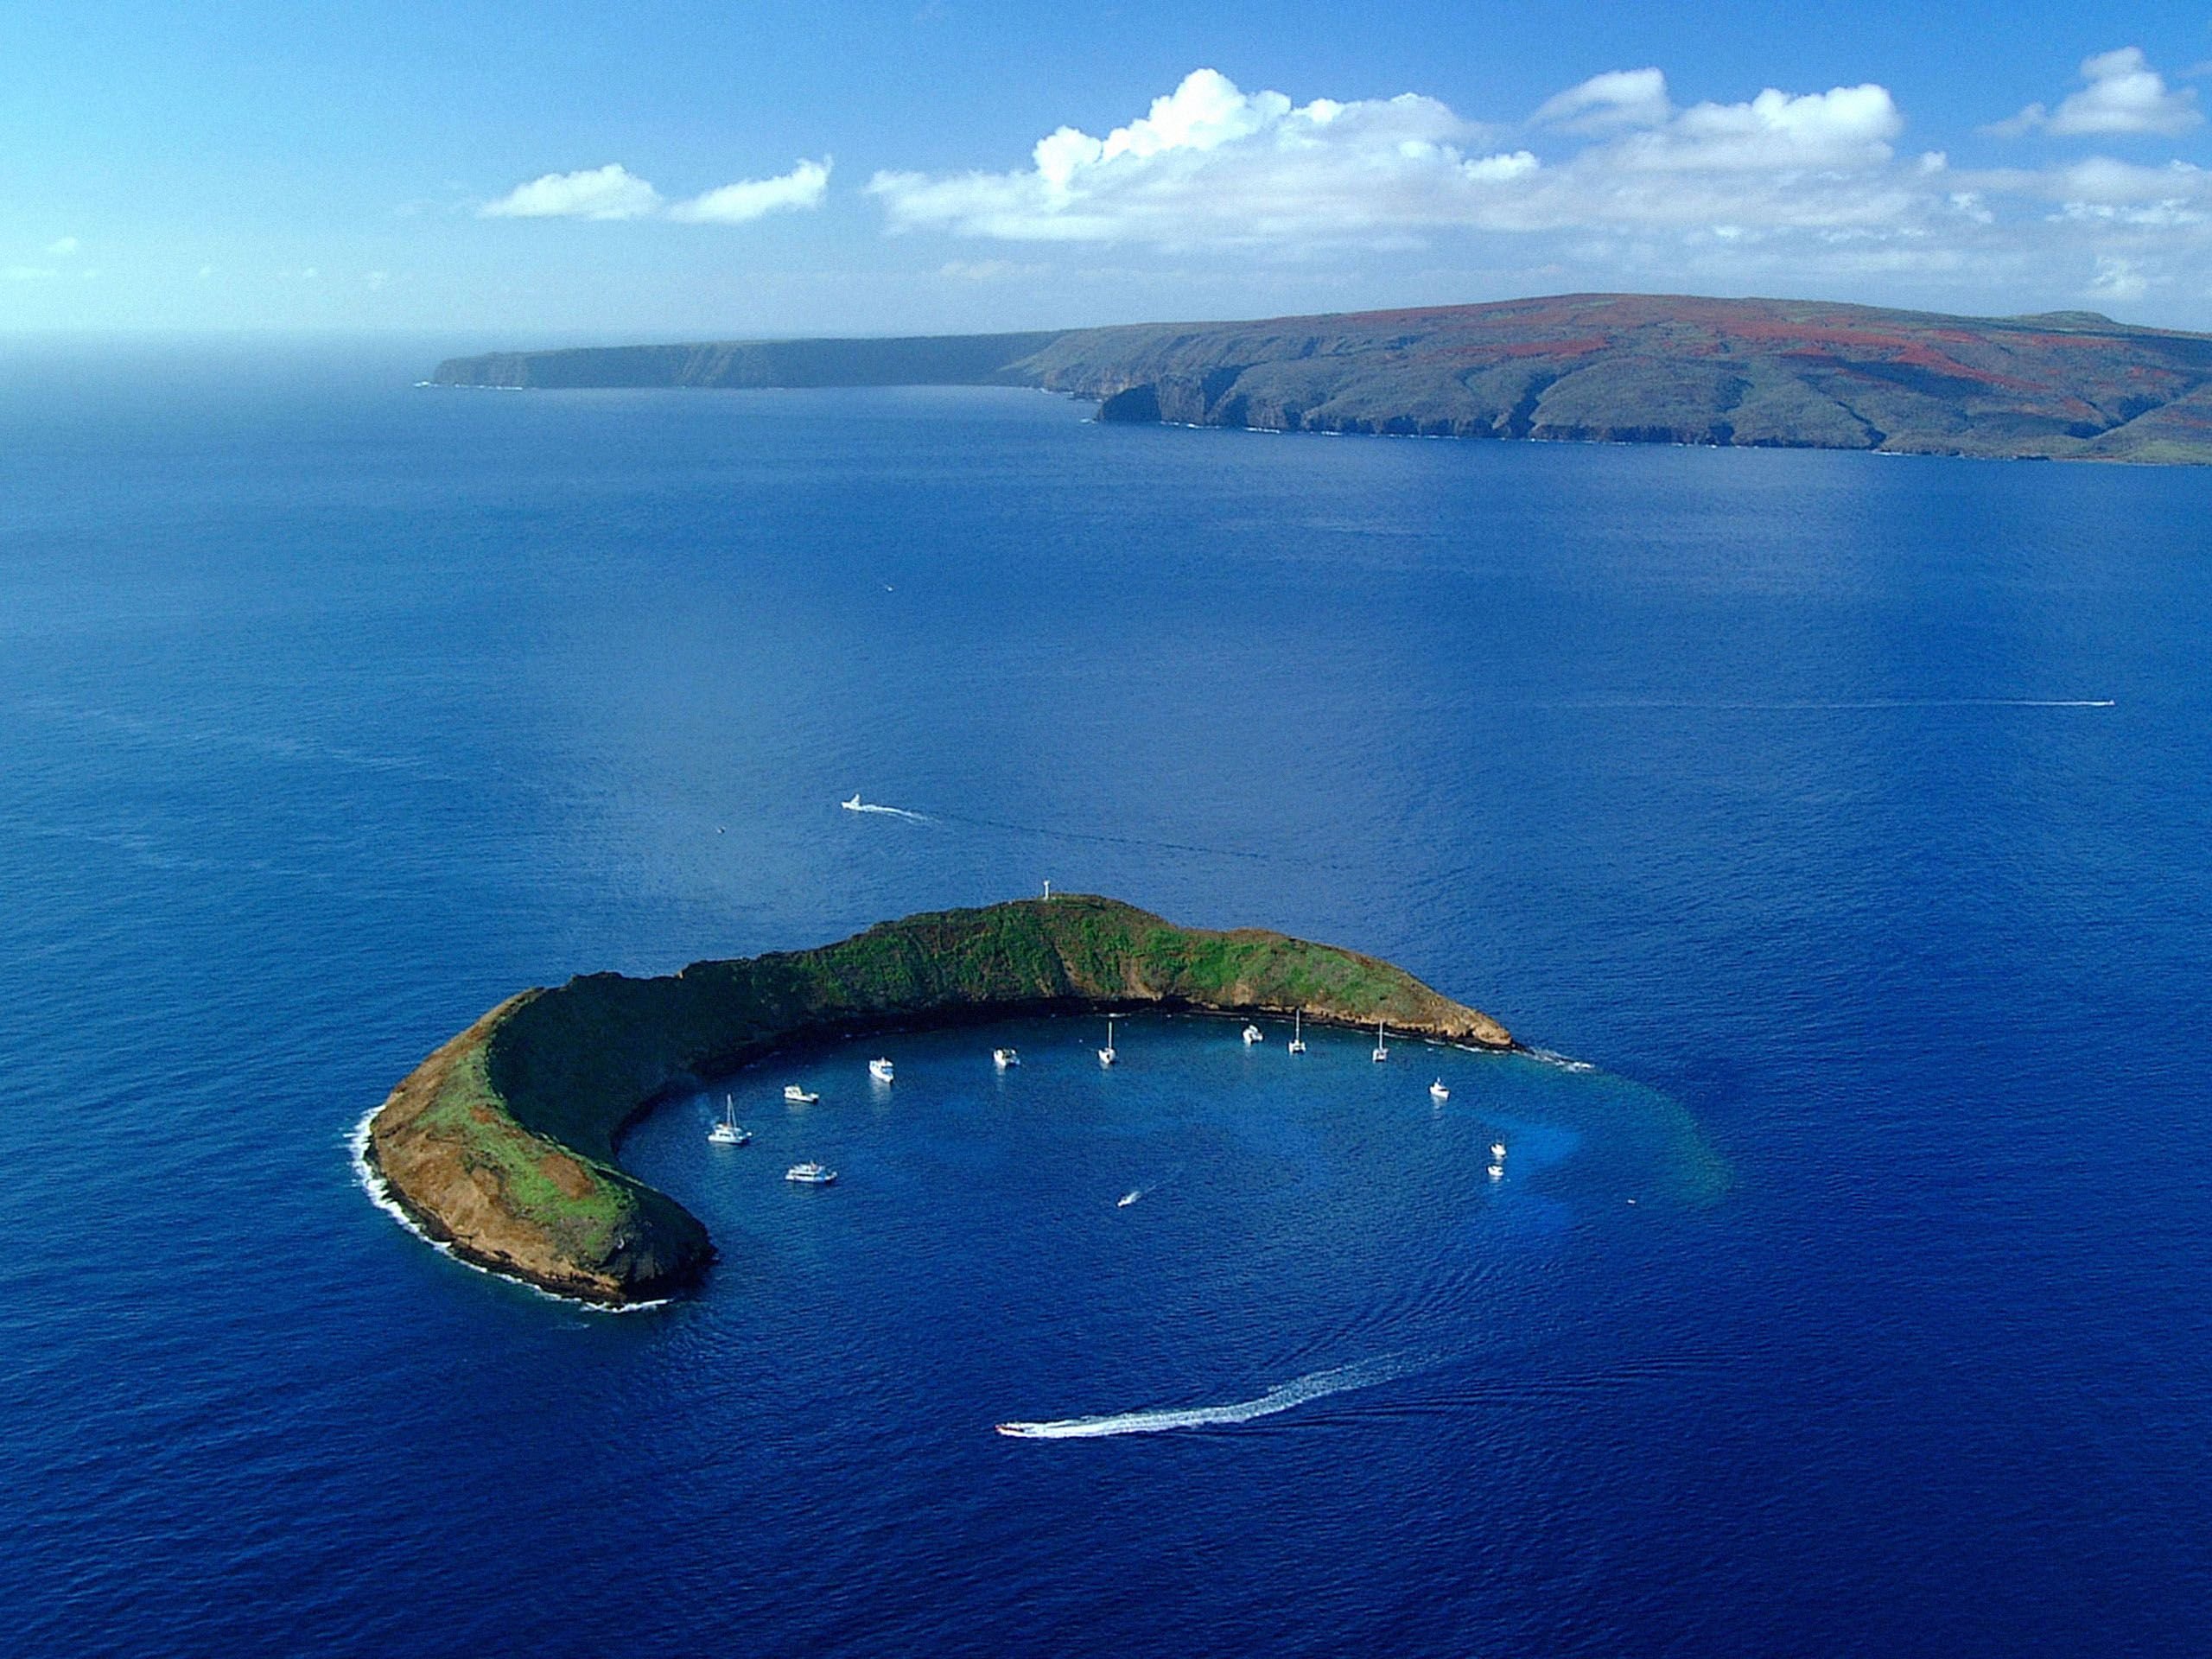 Тихий океан самые крупные острова. Остров Молокини, Гавайи. Кратер Молокини, Гавайи. Остров Мауи Гавайи. Гавайский архипелаг остров Мауи.